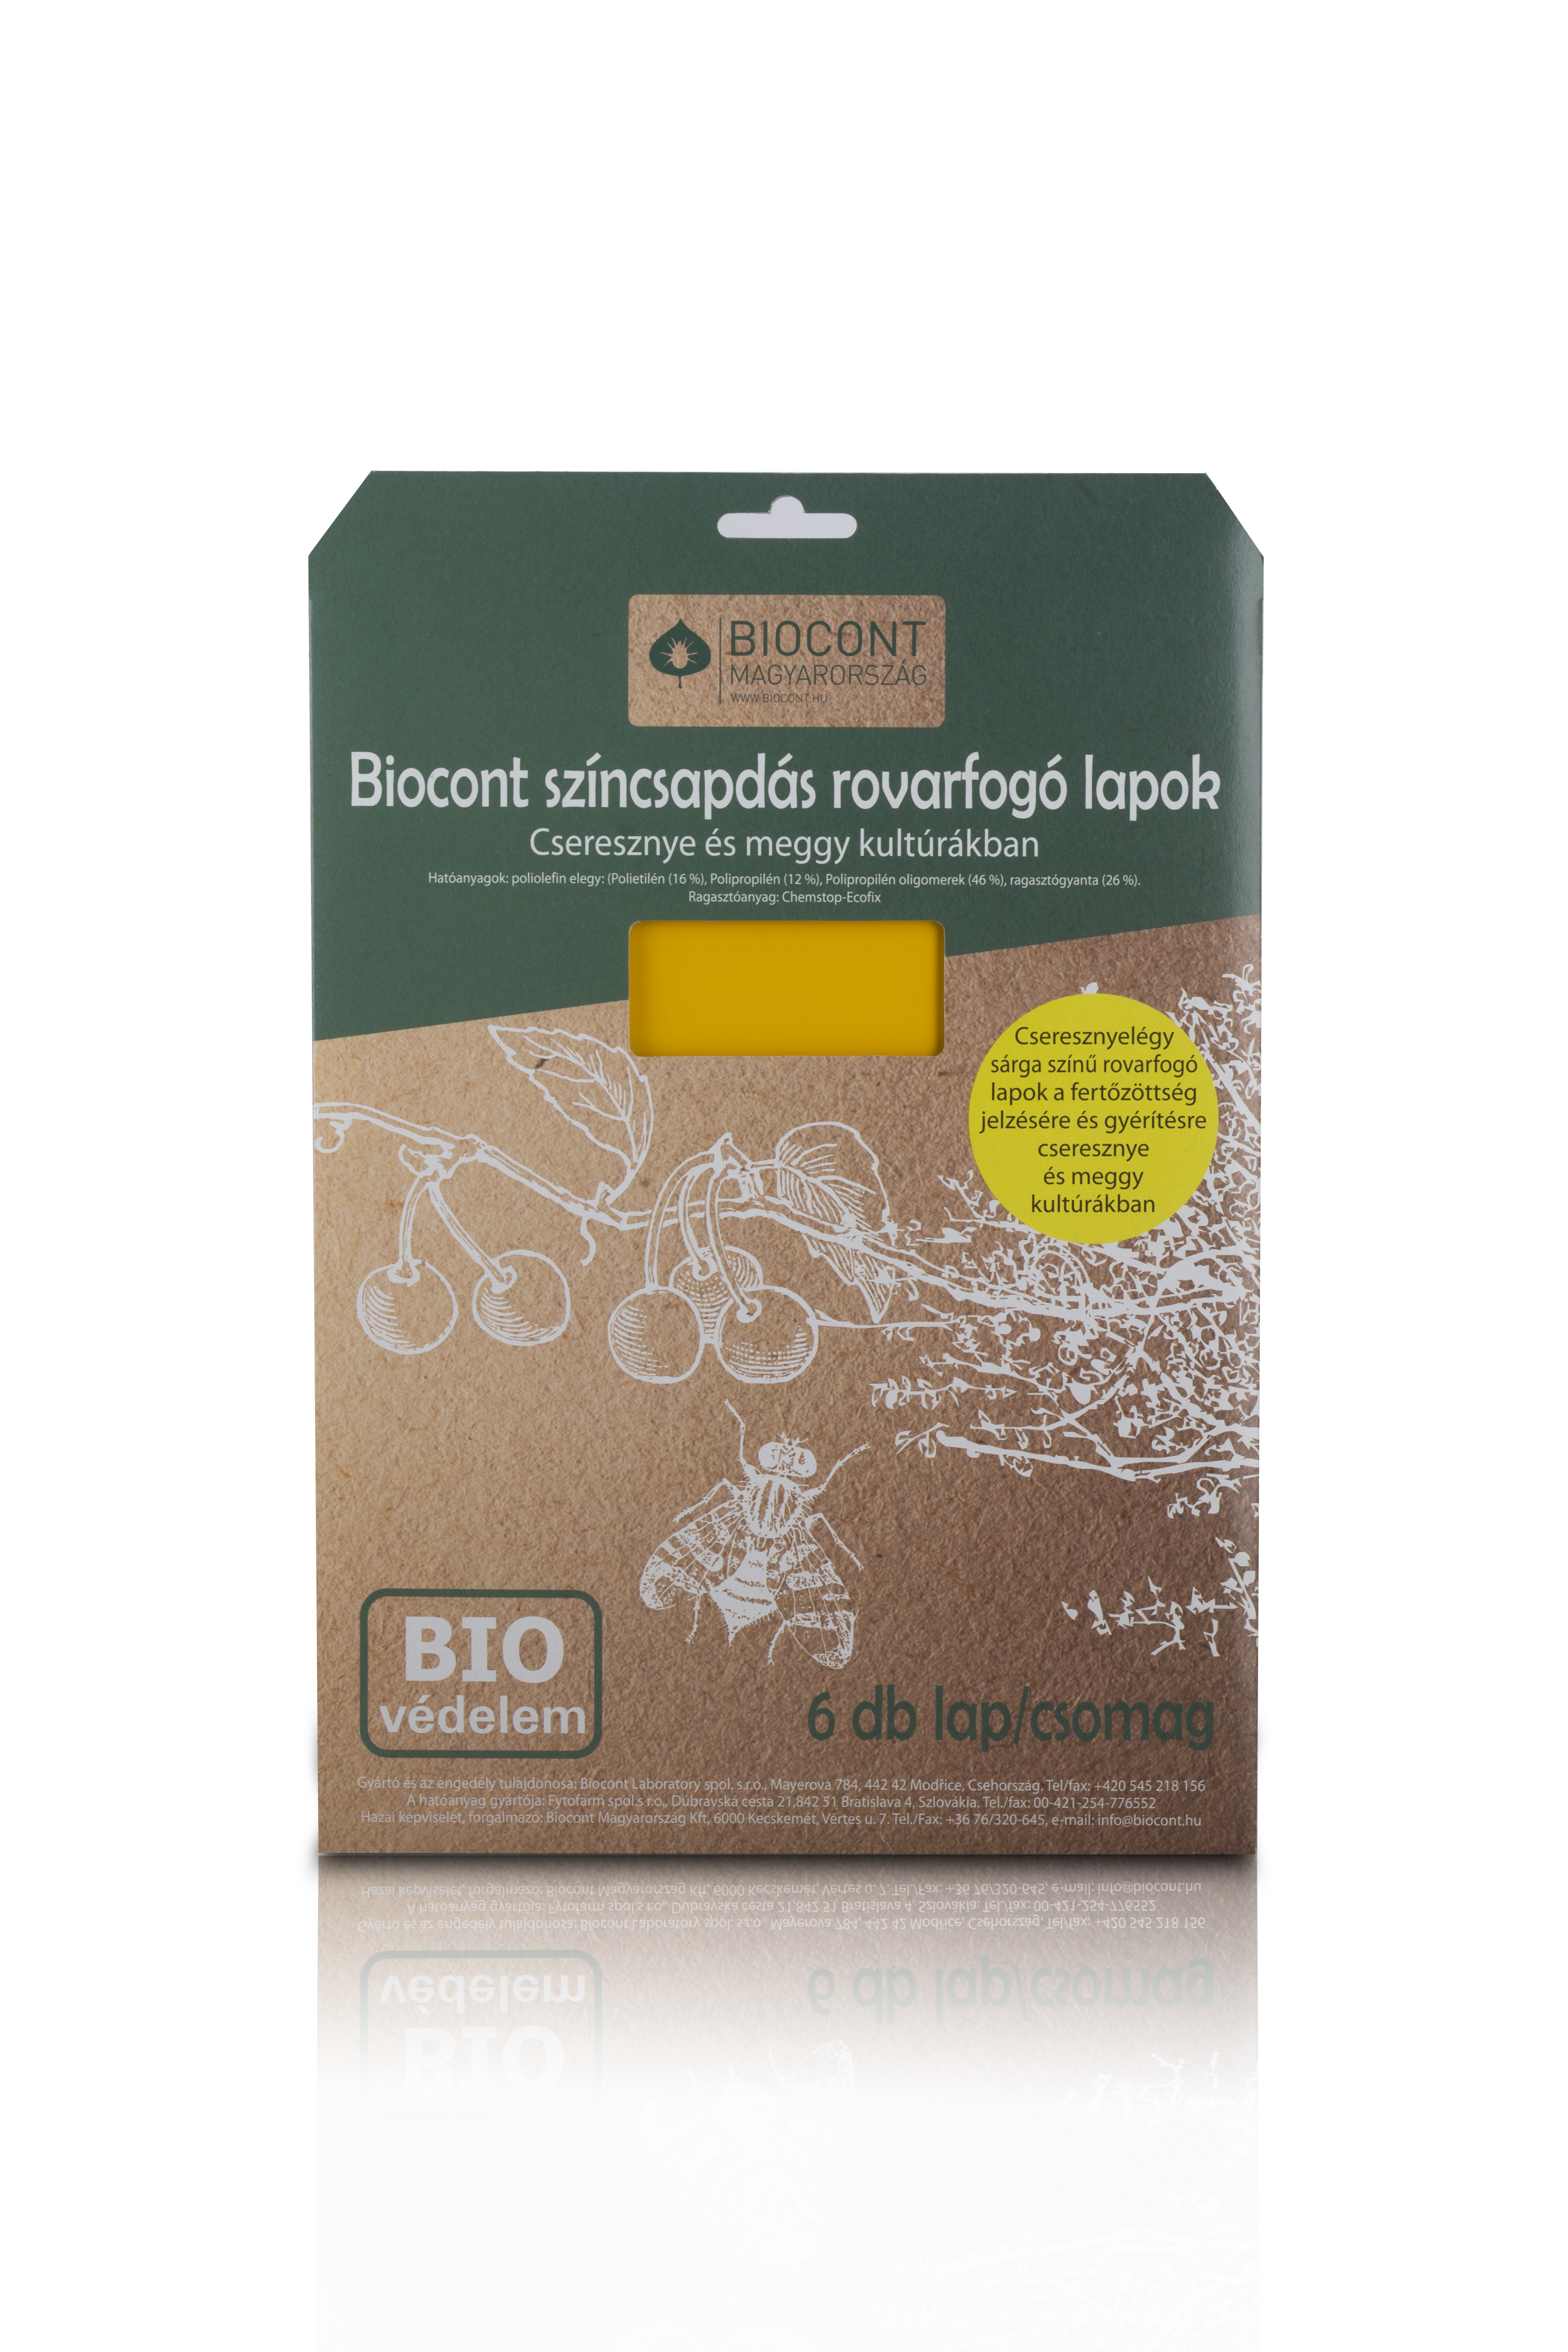 Biocont cseresznyelégy színcsapda + illatcsalétek (6lap+1 csalétek)